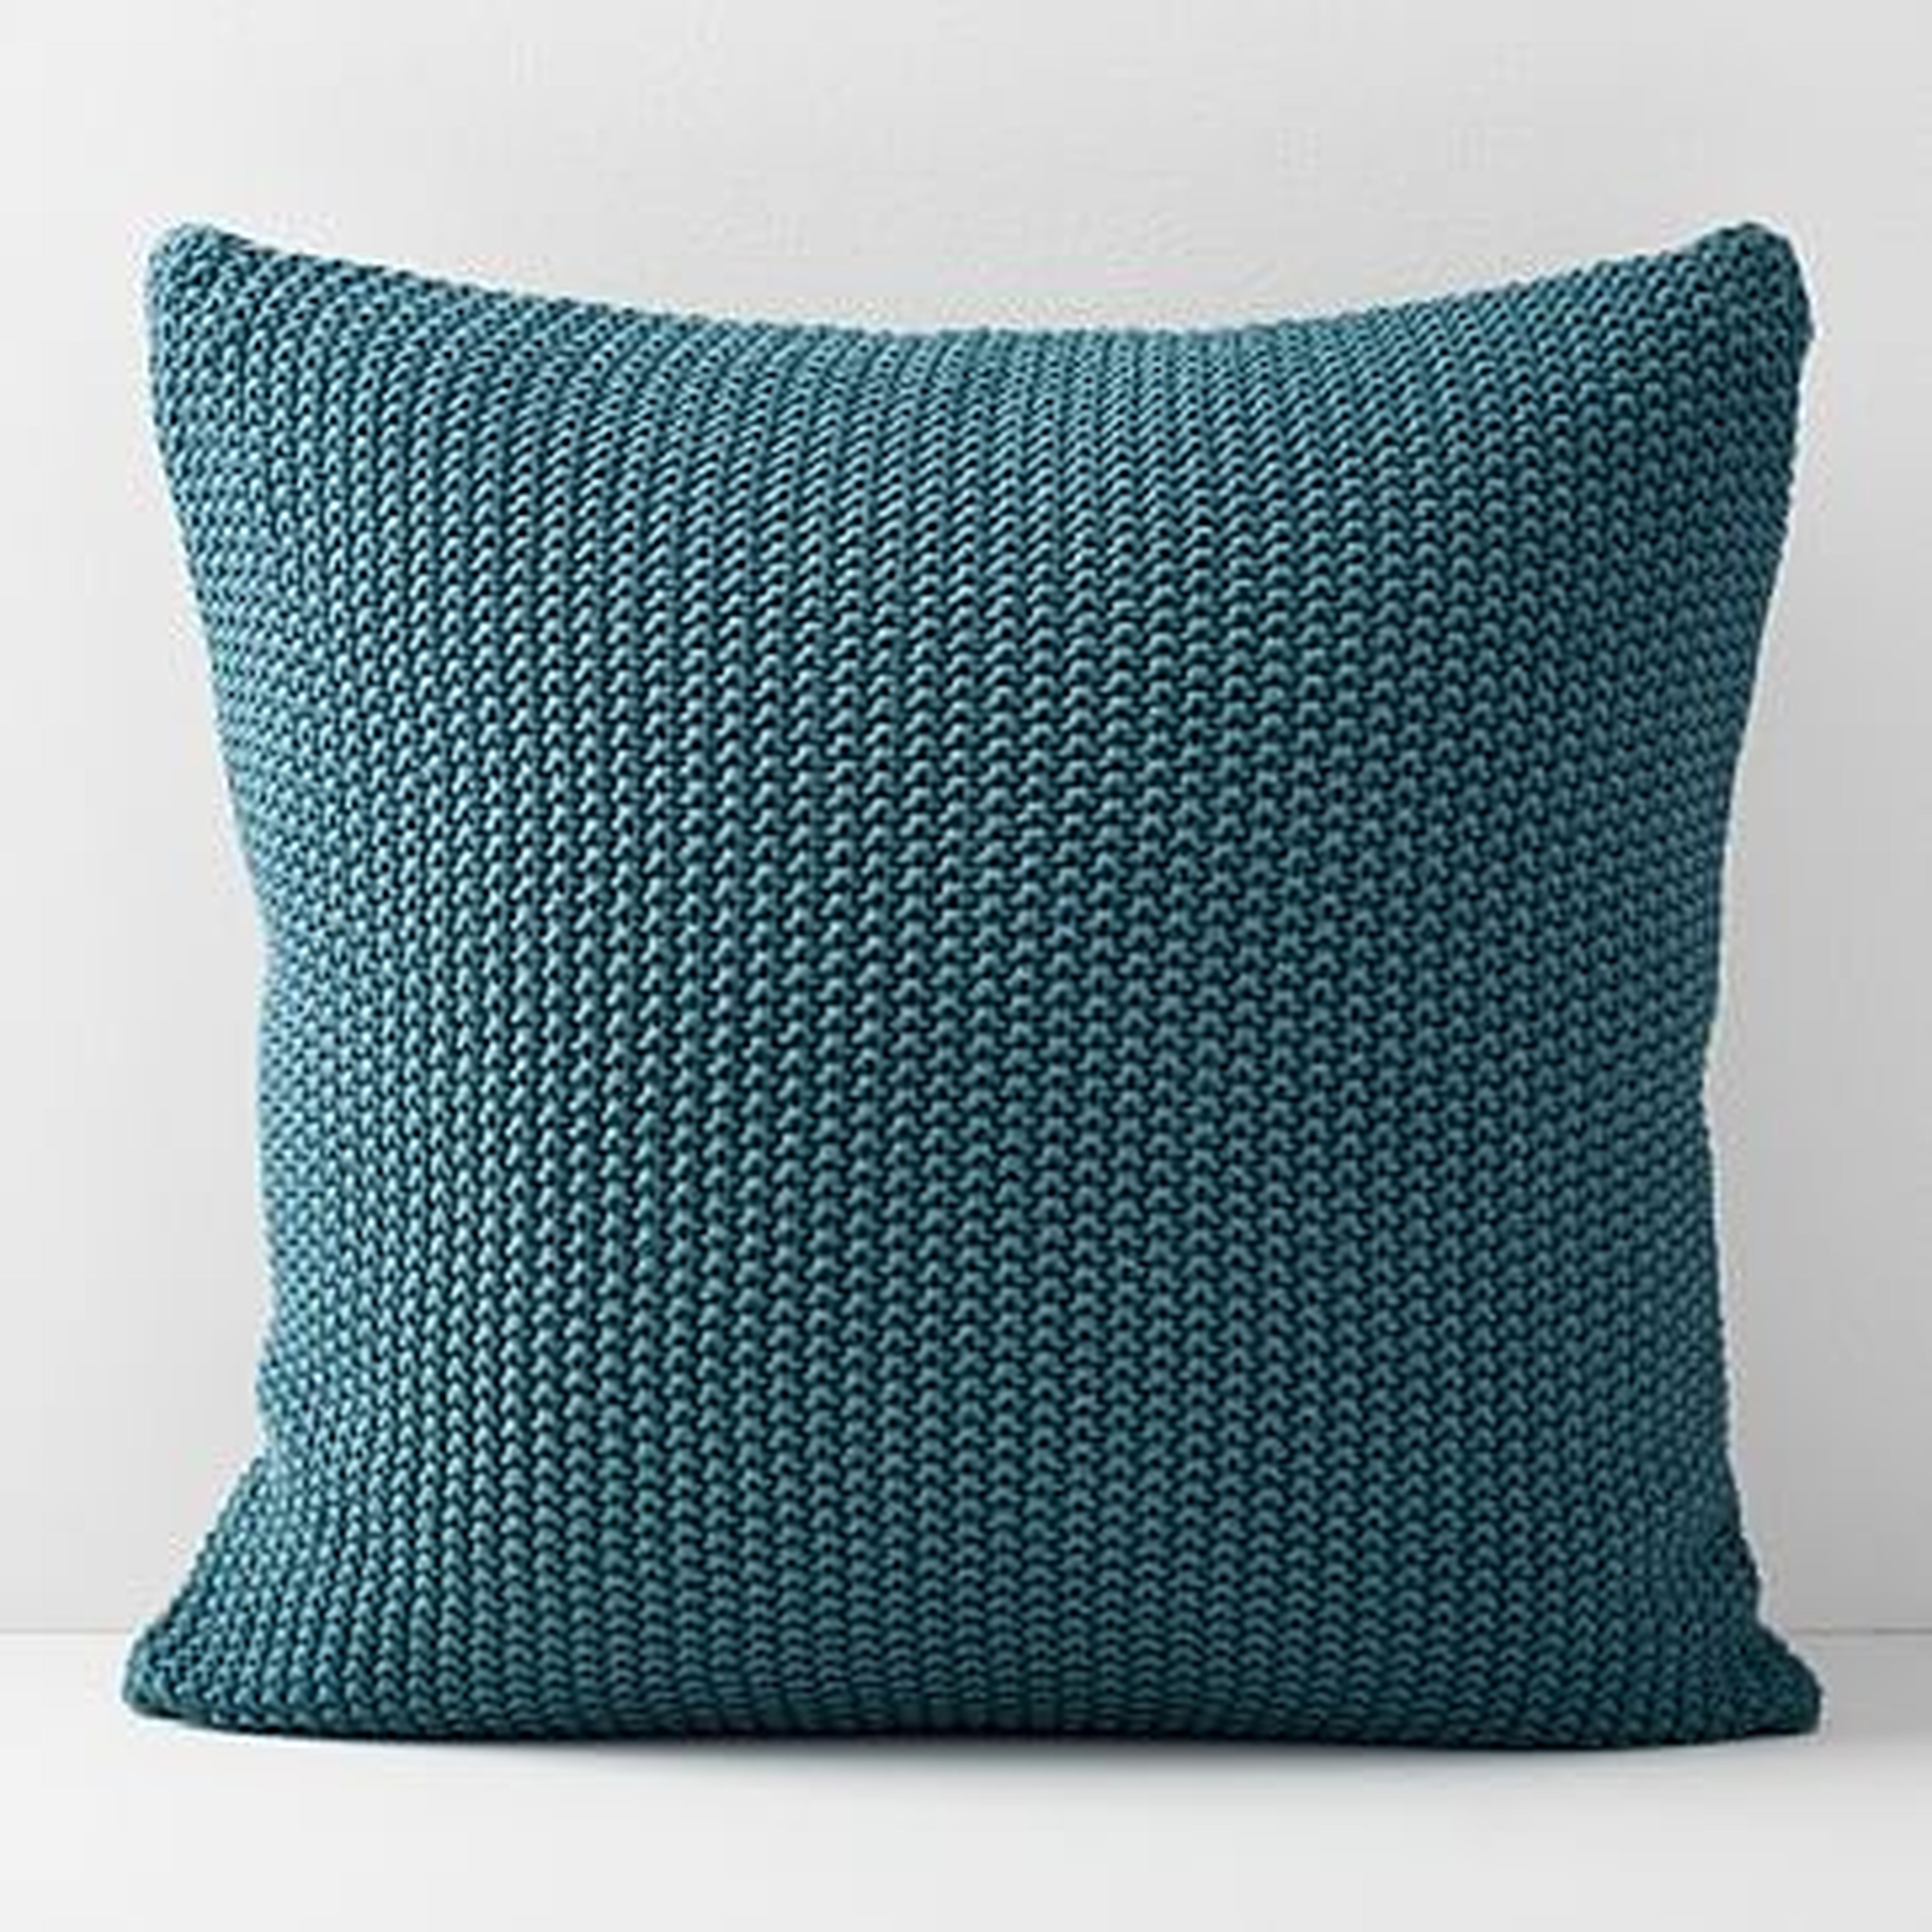 Cotton Knit Pillow Cover, Mineral Blue - West Elm